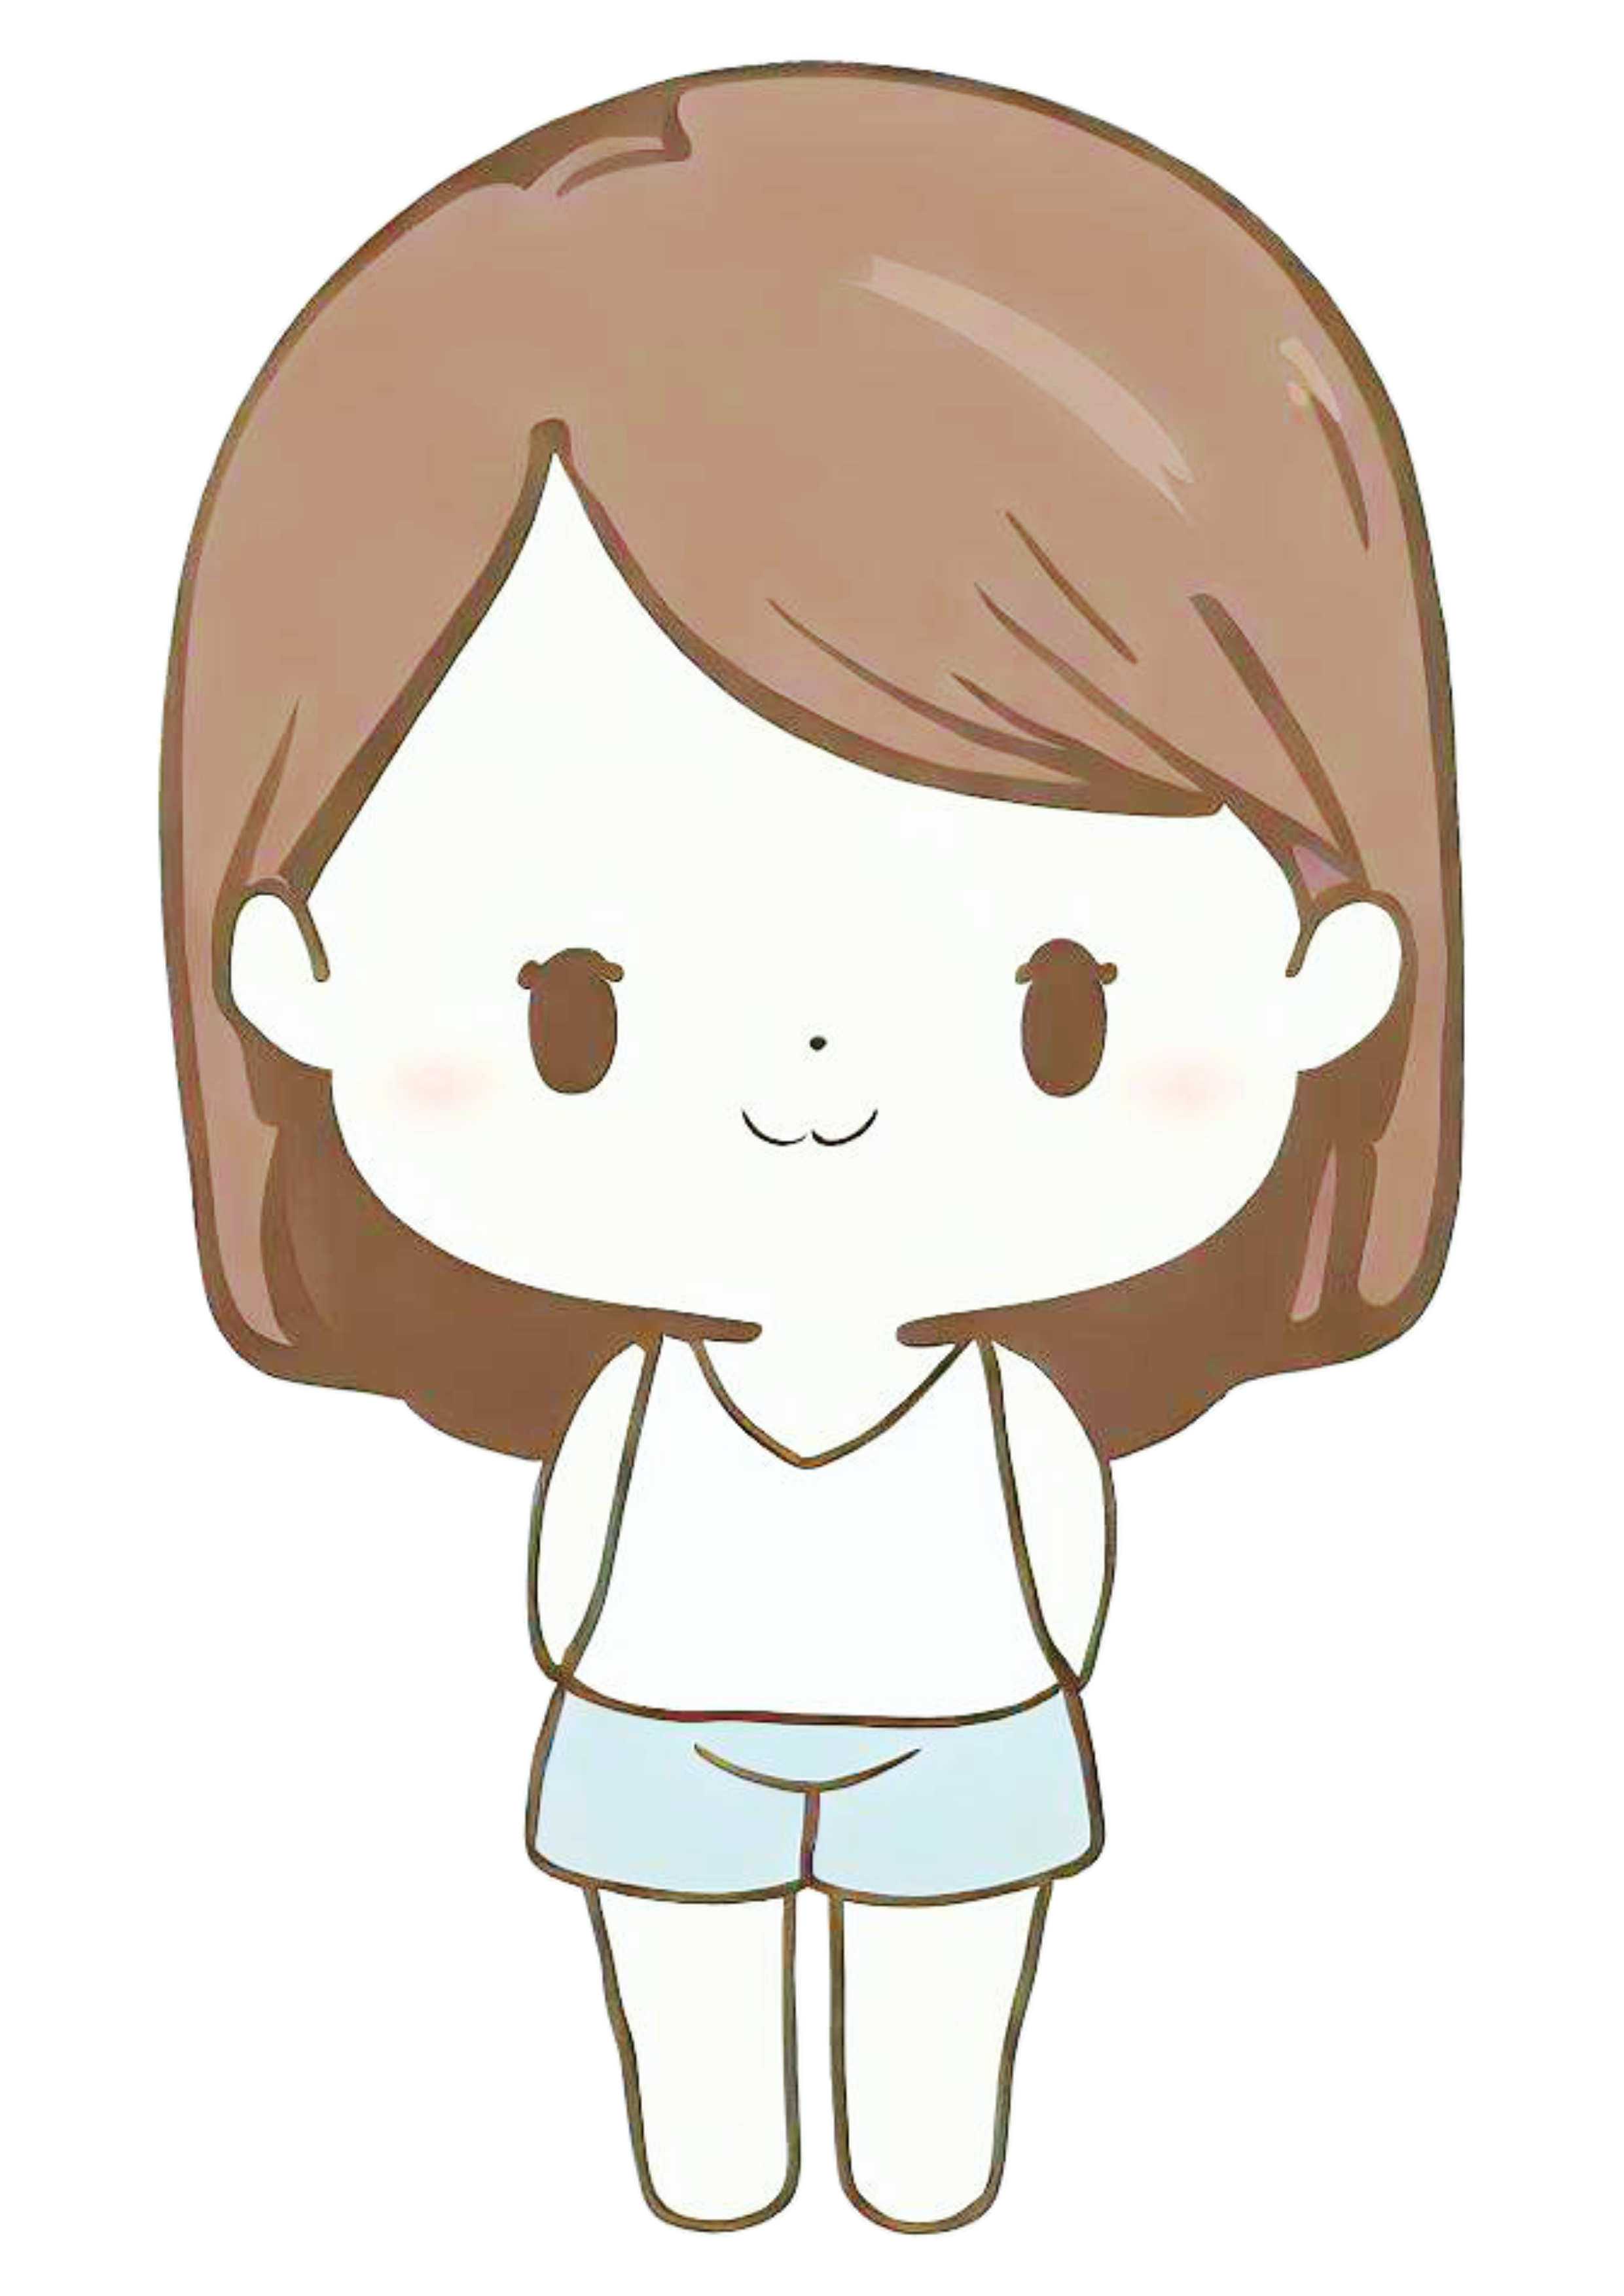 Bonequinha engraçada cabeçuda menina brinquedo toy pocket cute chibi desenho simples artes gráficas pijama png